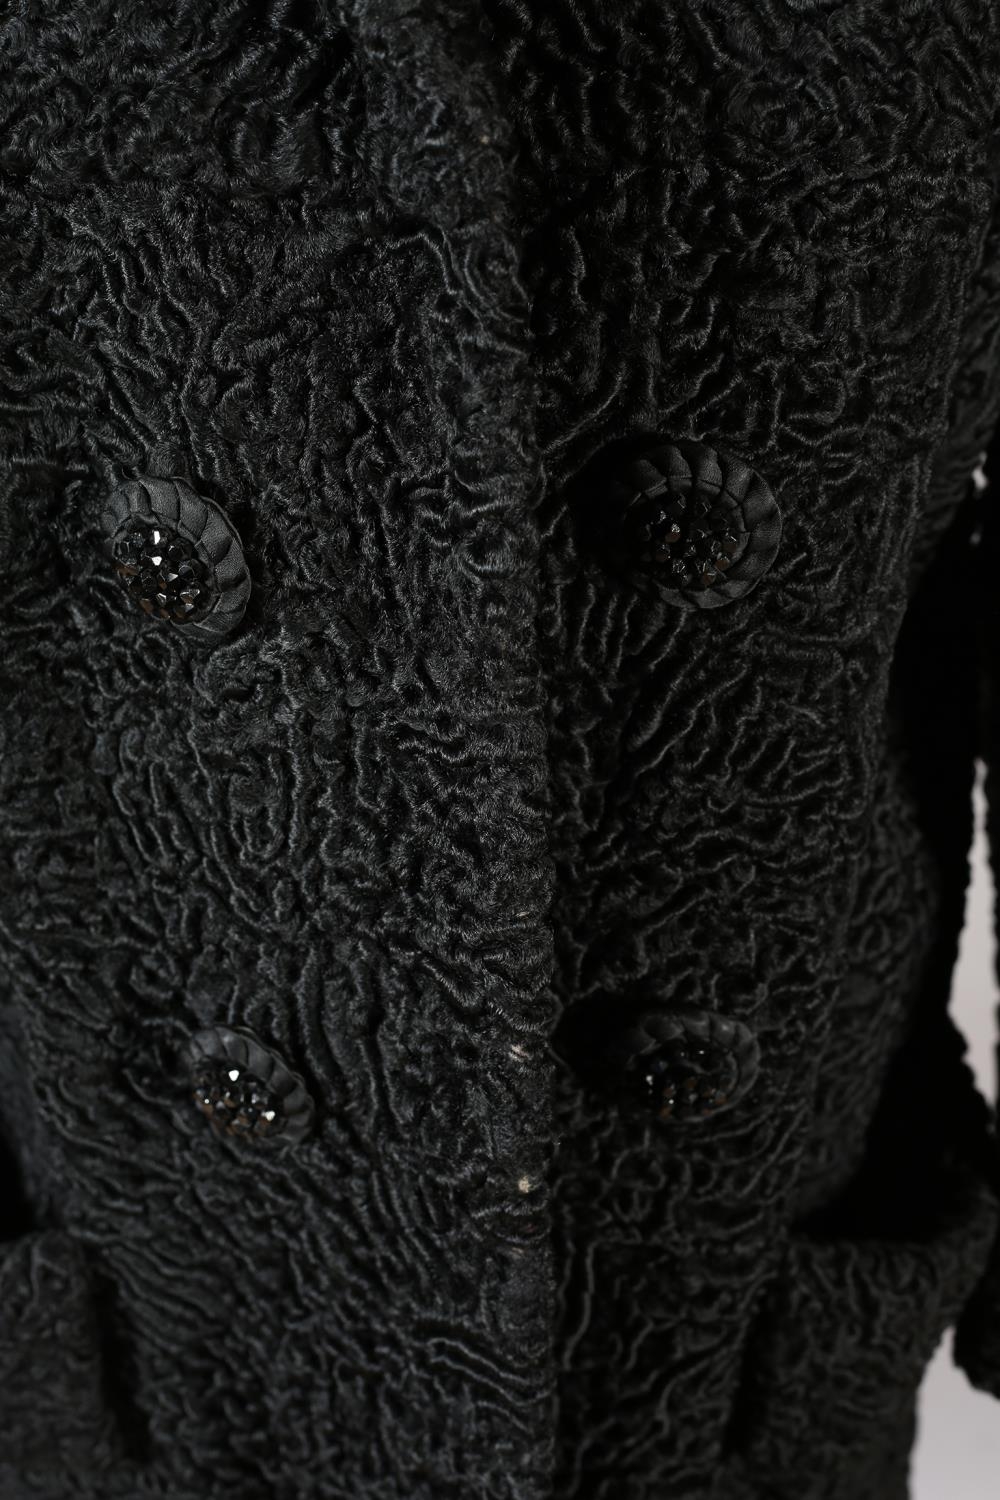 Stylish 20th century Beaver Lamb jacket/coat, c 1950’s, black, three-quarter length, black lining - Image 3 of 5